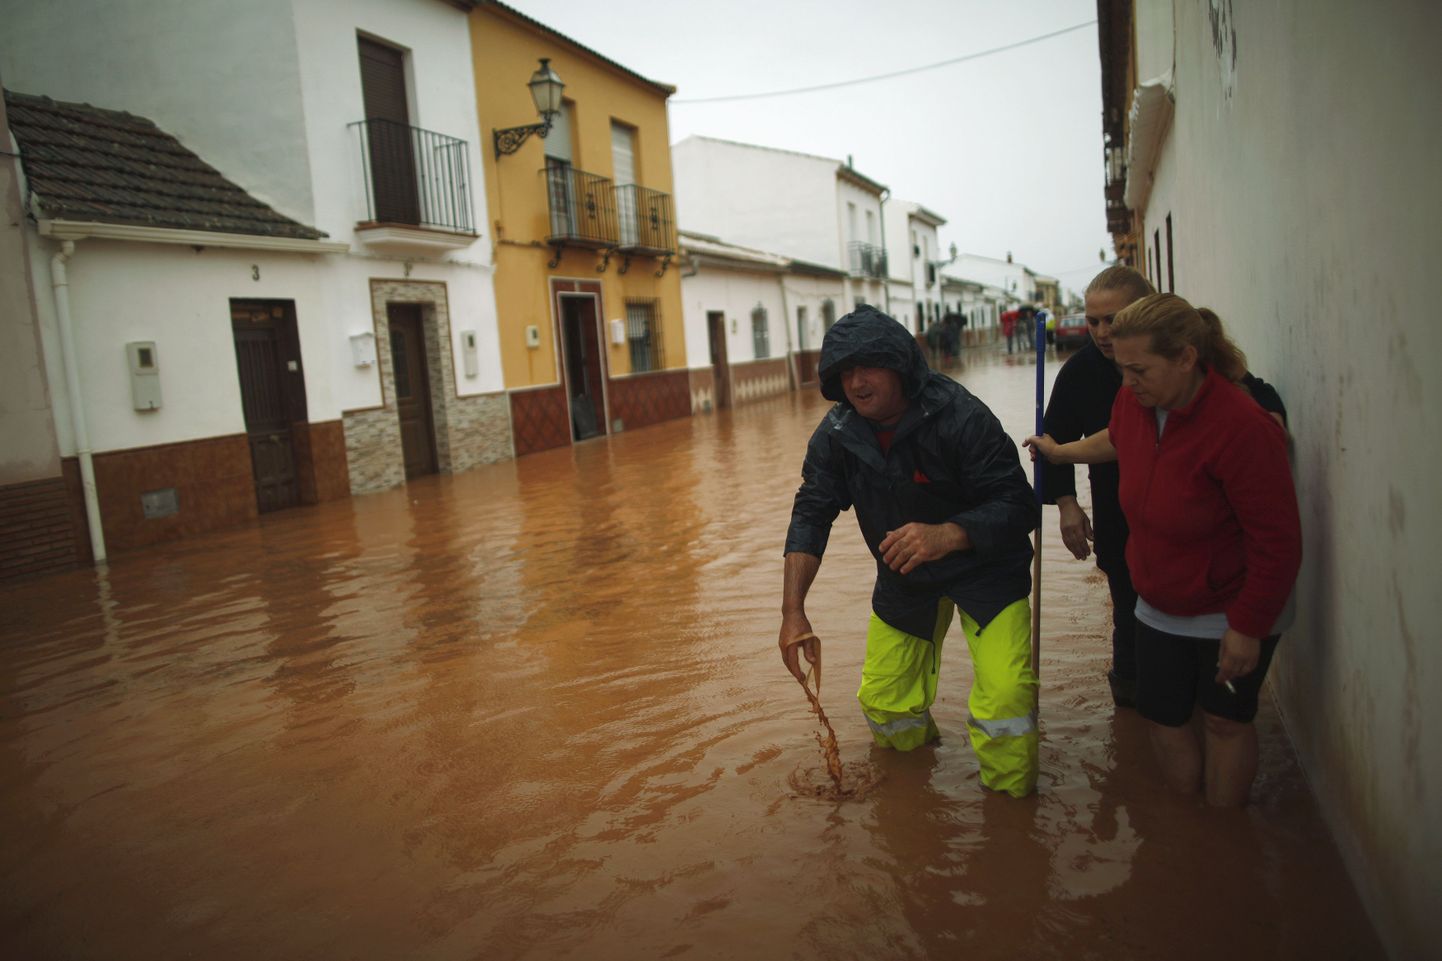 Inimesed üleujutatud tänaval Bobadillas, mis asub Lõuna-Hispaanias Malaga lähedal.